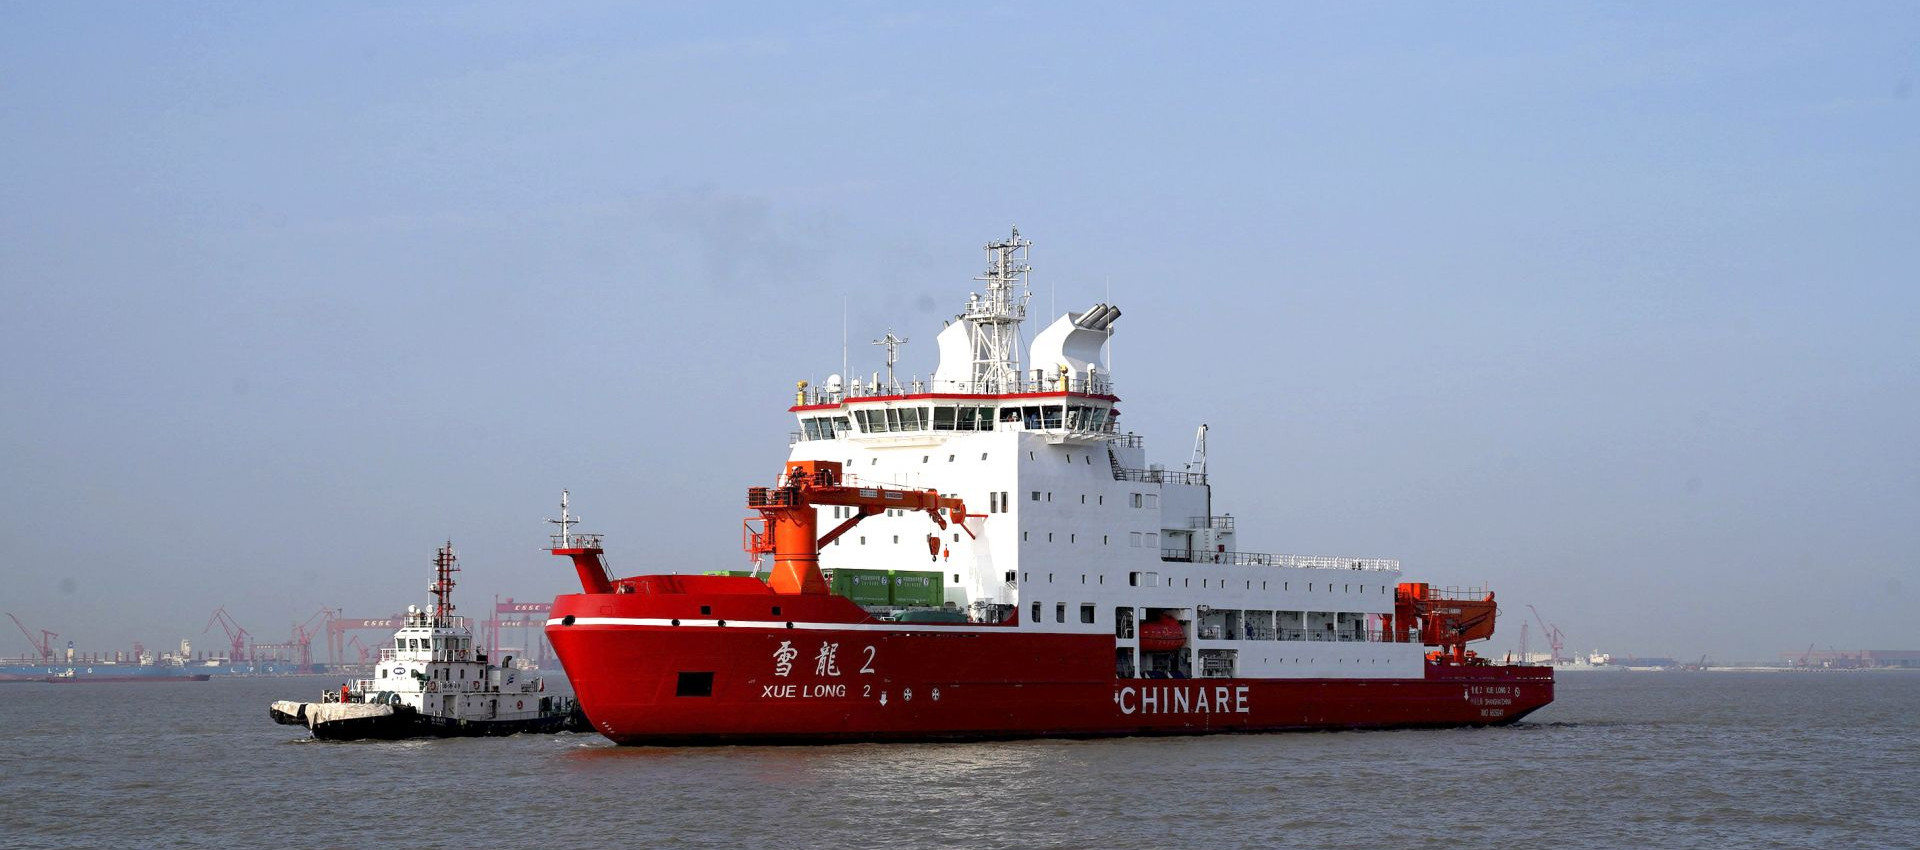 最新の会社の事例について Longtengの溶接ワイヤはXuelongの北極の探険の船で使用された